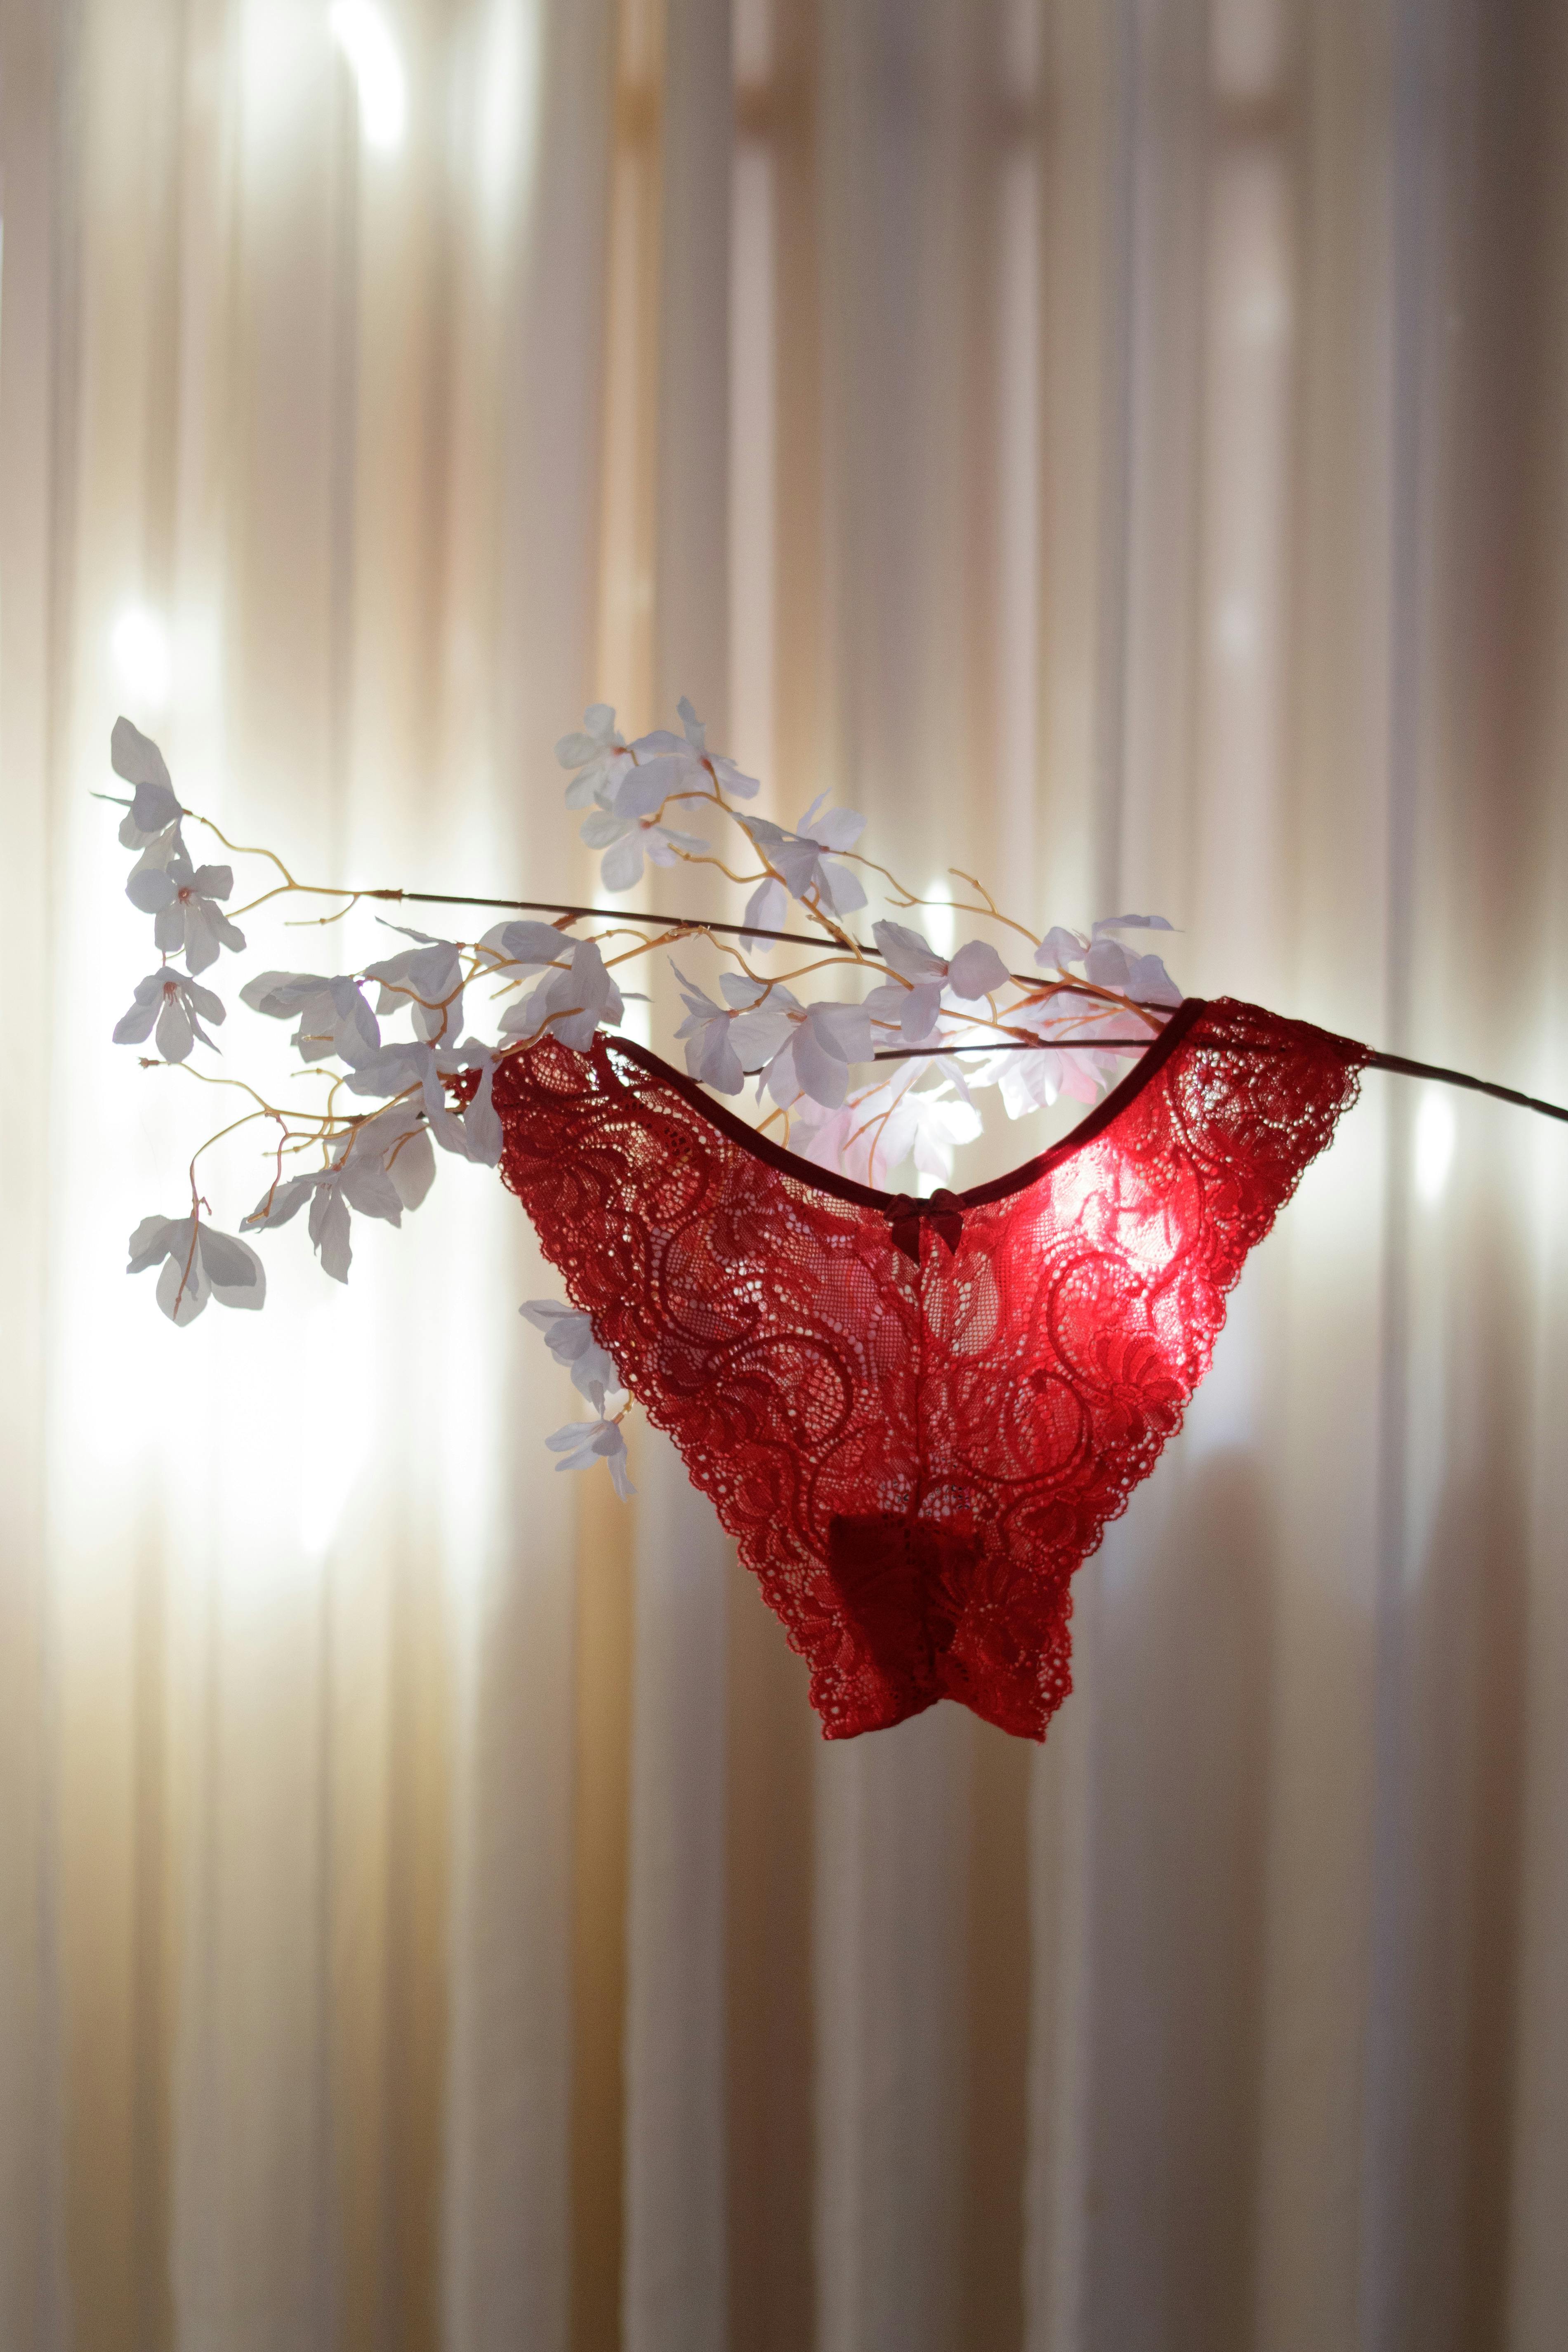 Red Underwear Photos, Download The BEST Free Red Underwear Stock